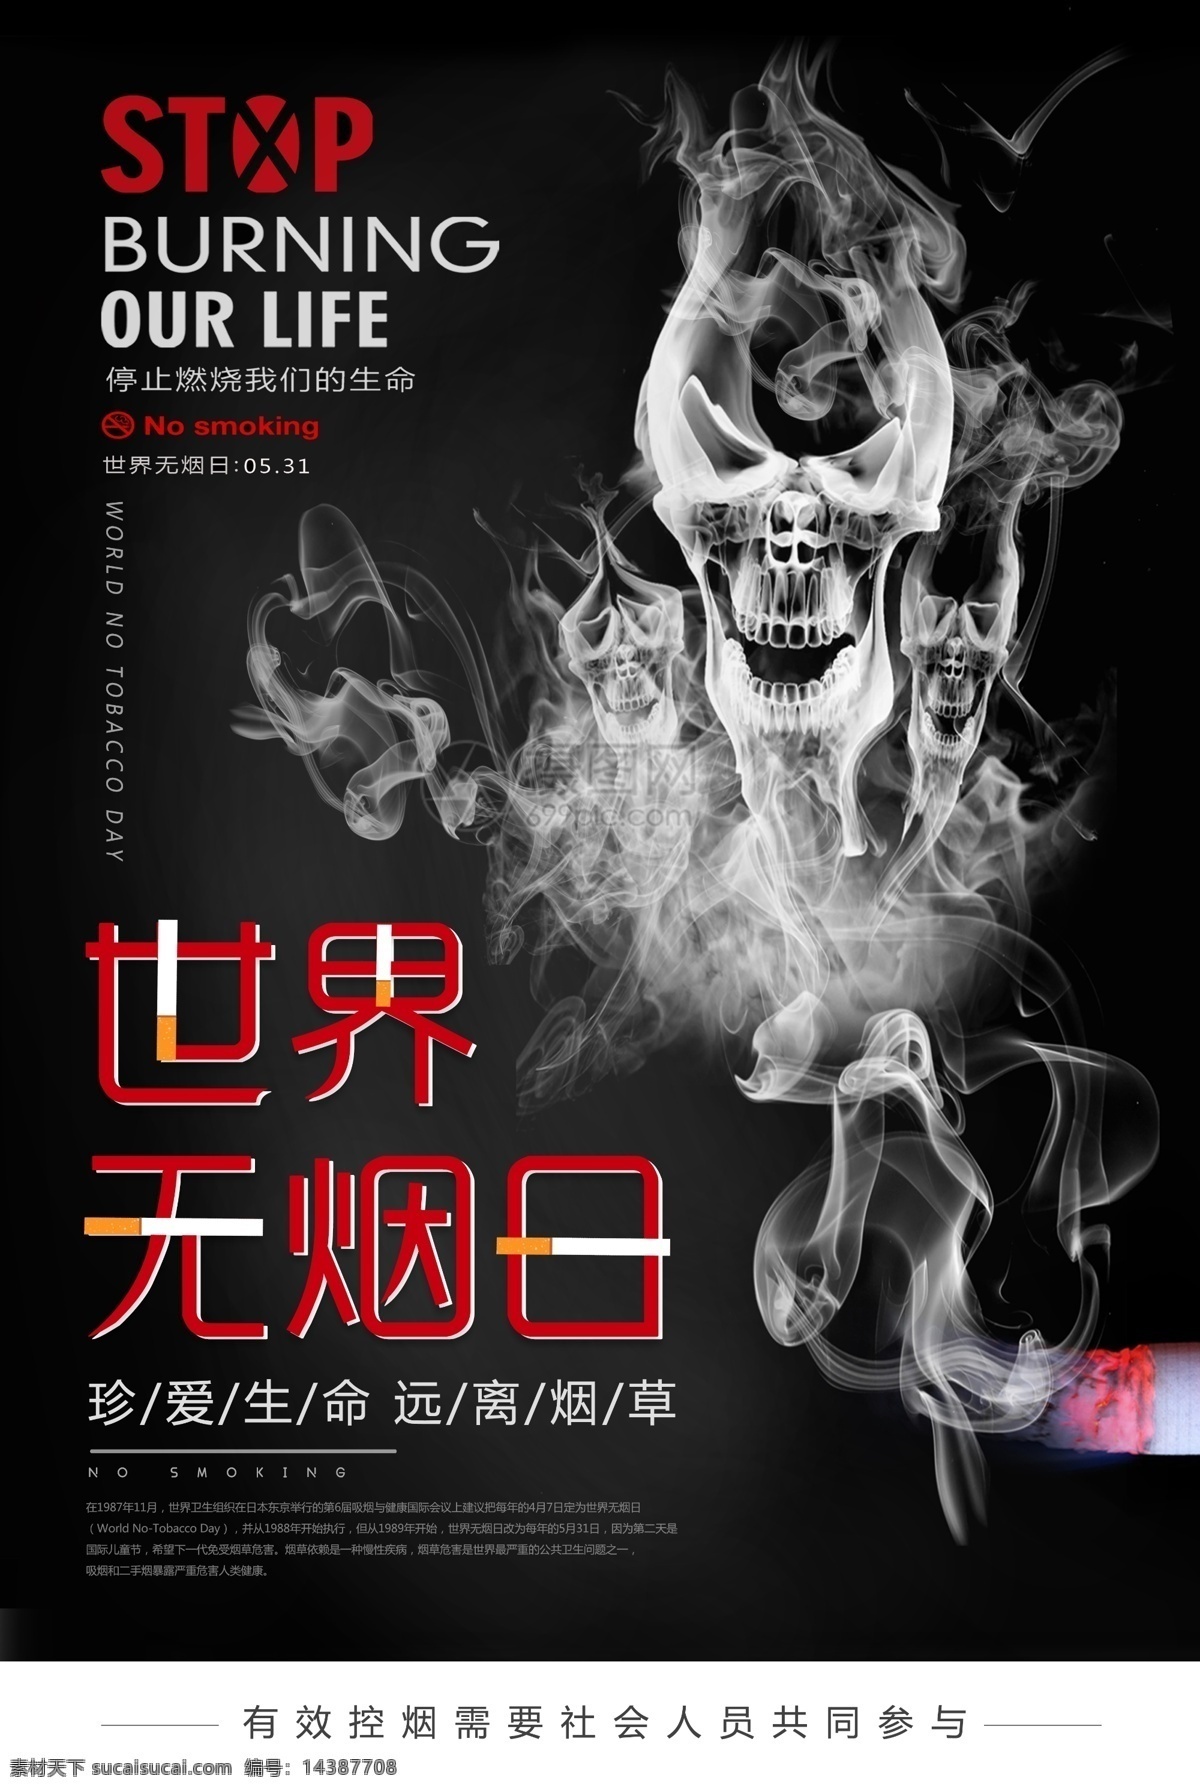 黑色 系 世界 无烟日 公益 宣传海报 5月31日 烟 香烟 吸烟 肺 世界无烟日 公益海报 吸烟有害健康